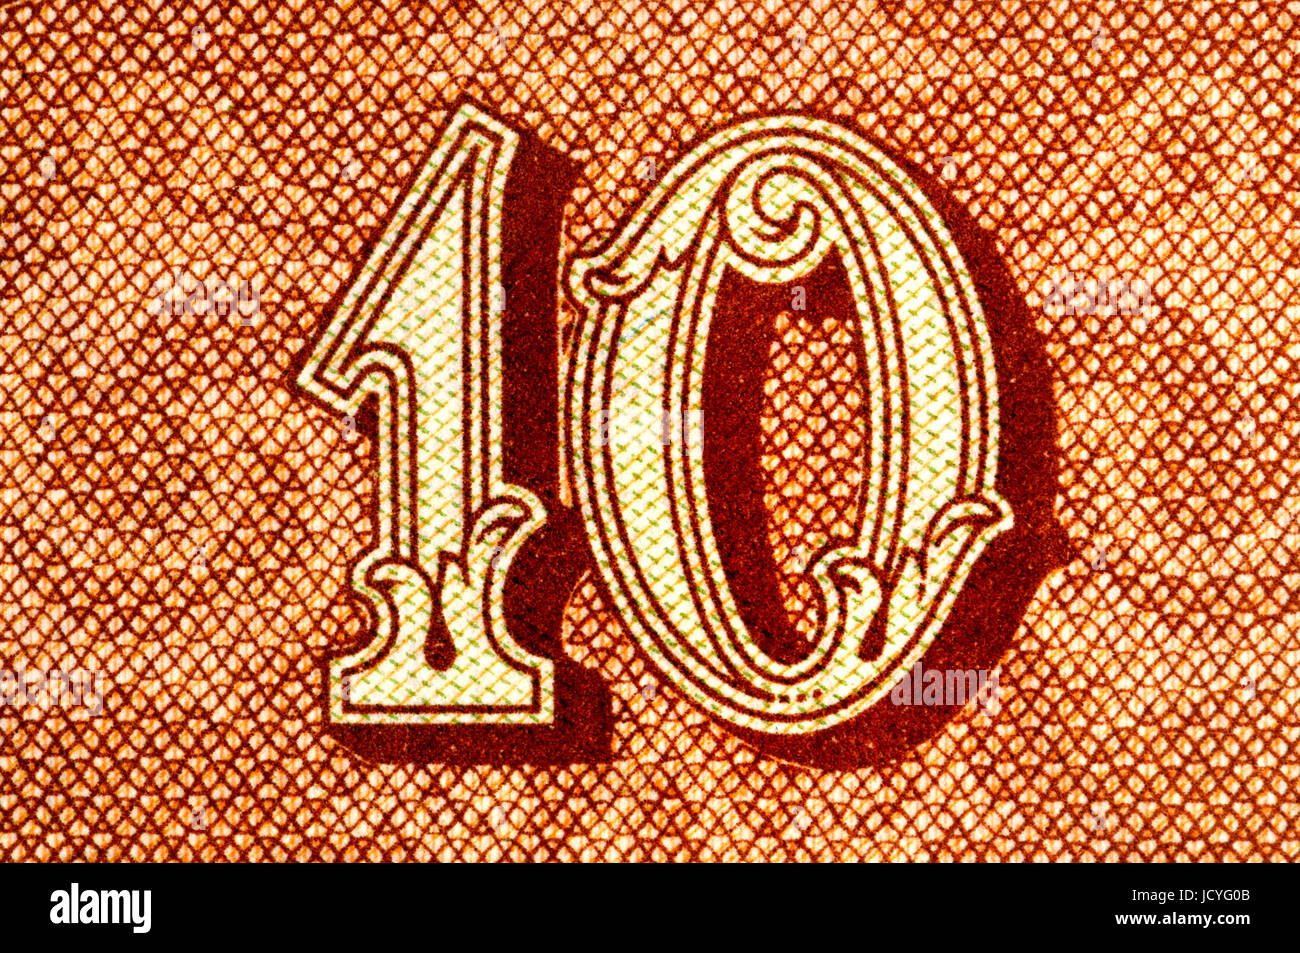 Ausschnitt aus einer 10kc Tschechische Banknote zeigt die Zahl 10 Stockfoto